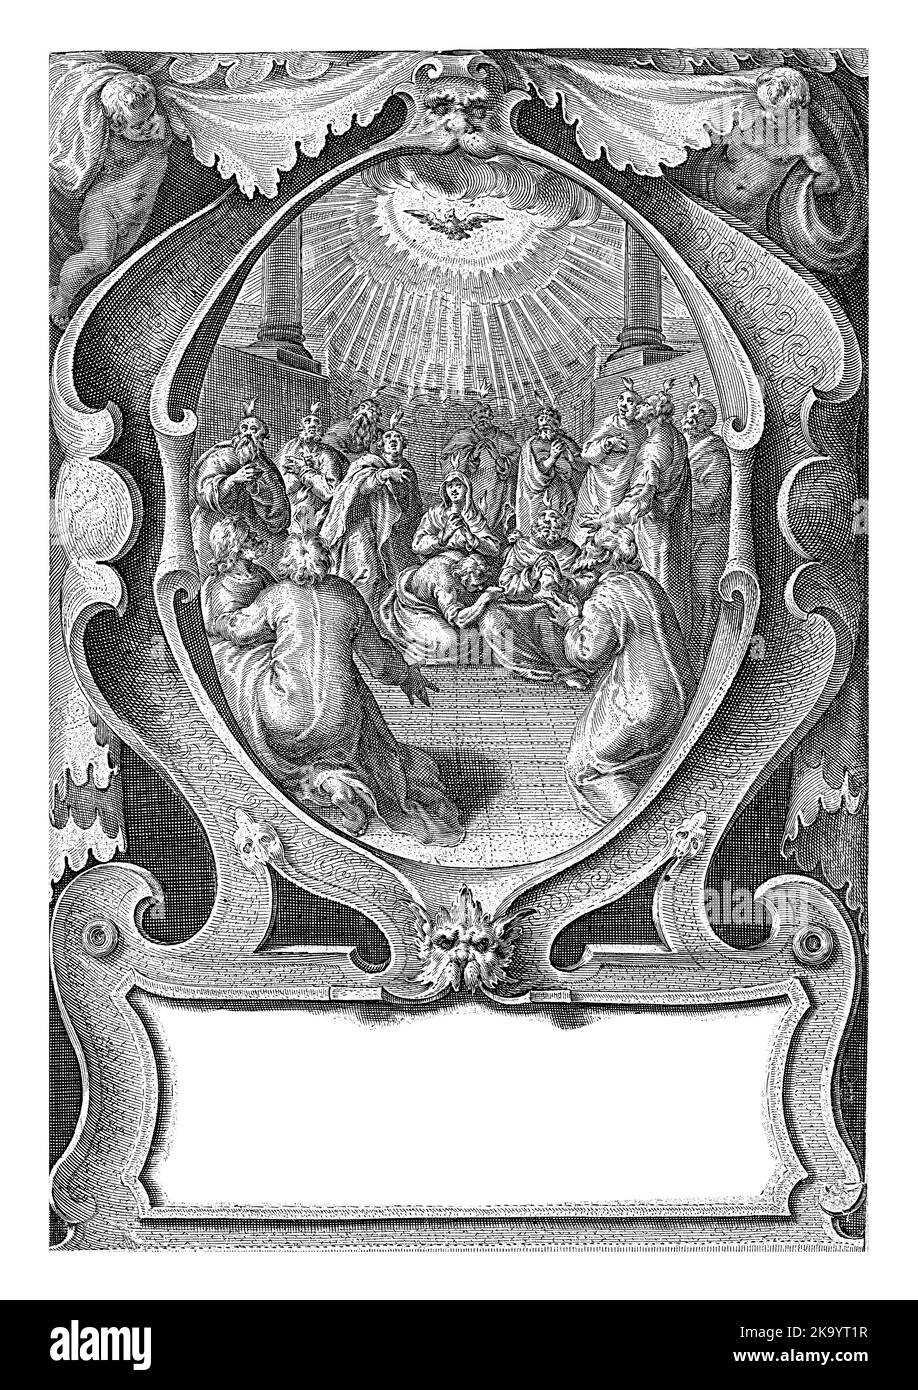 Maria sitzt in der Mitte eines heiligen Raumes, der von den Aposteln umgeben ist. Der Heilige Geist, in Form einer Taube, fliegt in einem Heiligenschein über den Männern. Stockfoto